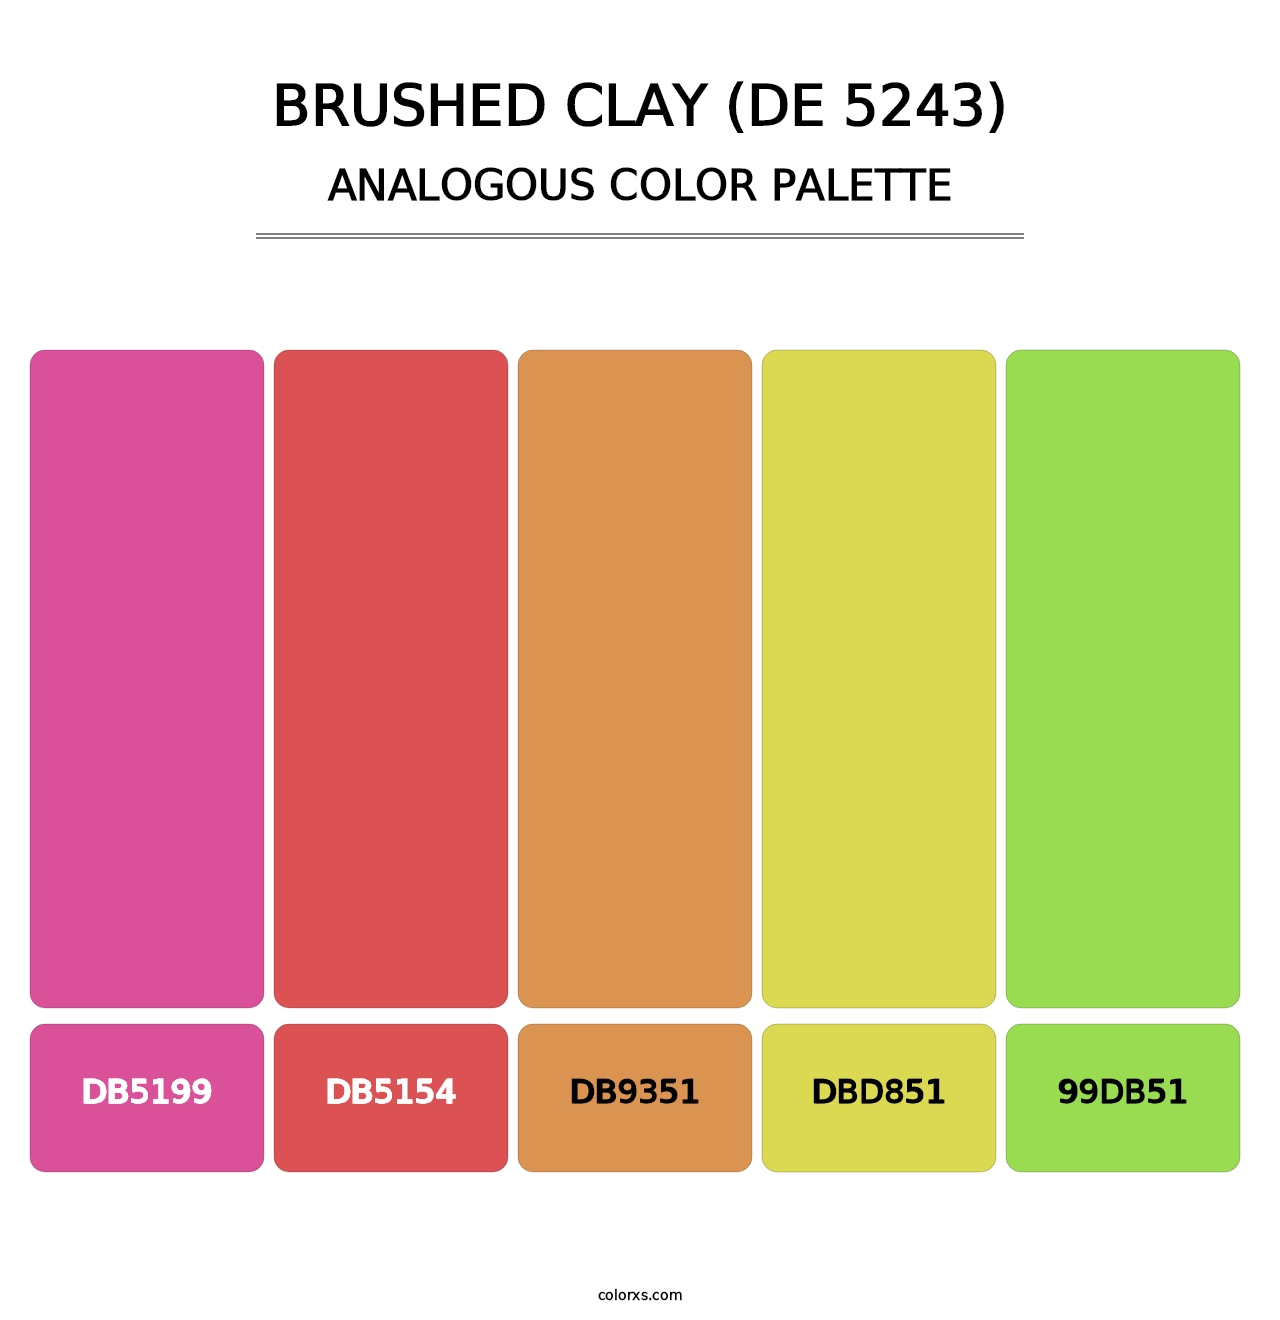 Brushed Clay (DE 5243) - Analogous Color Palette